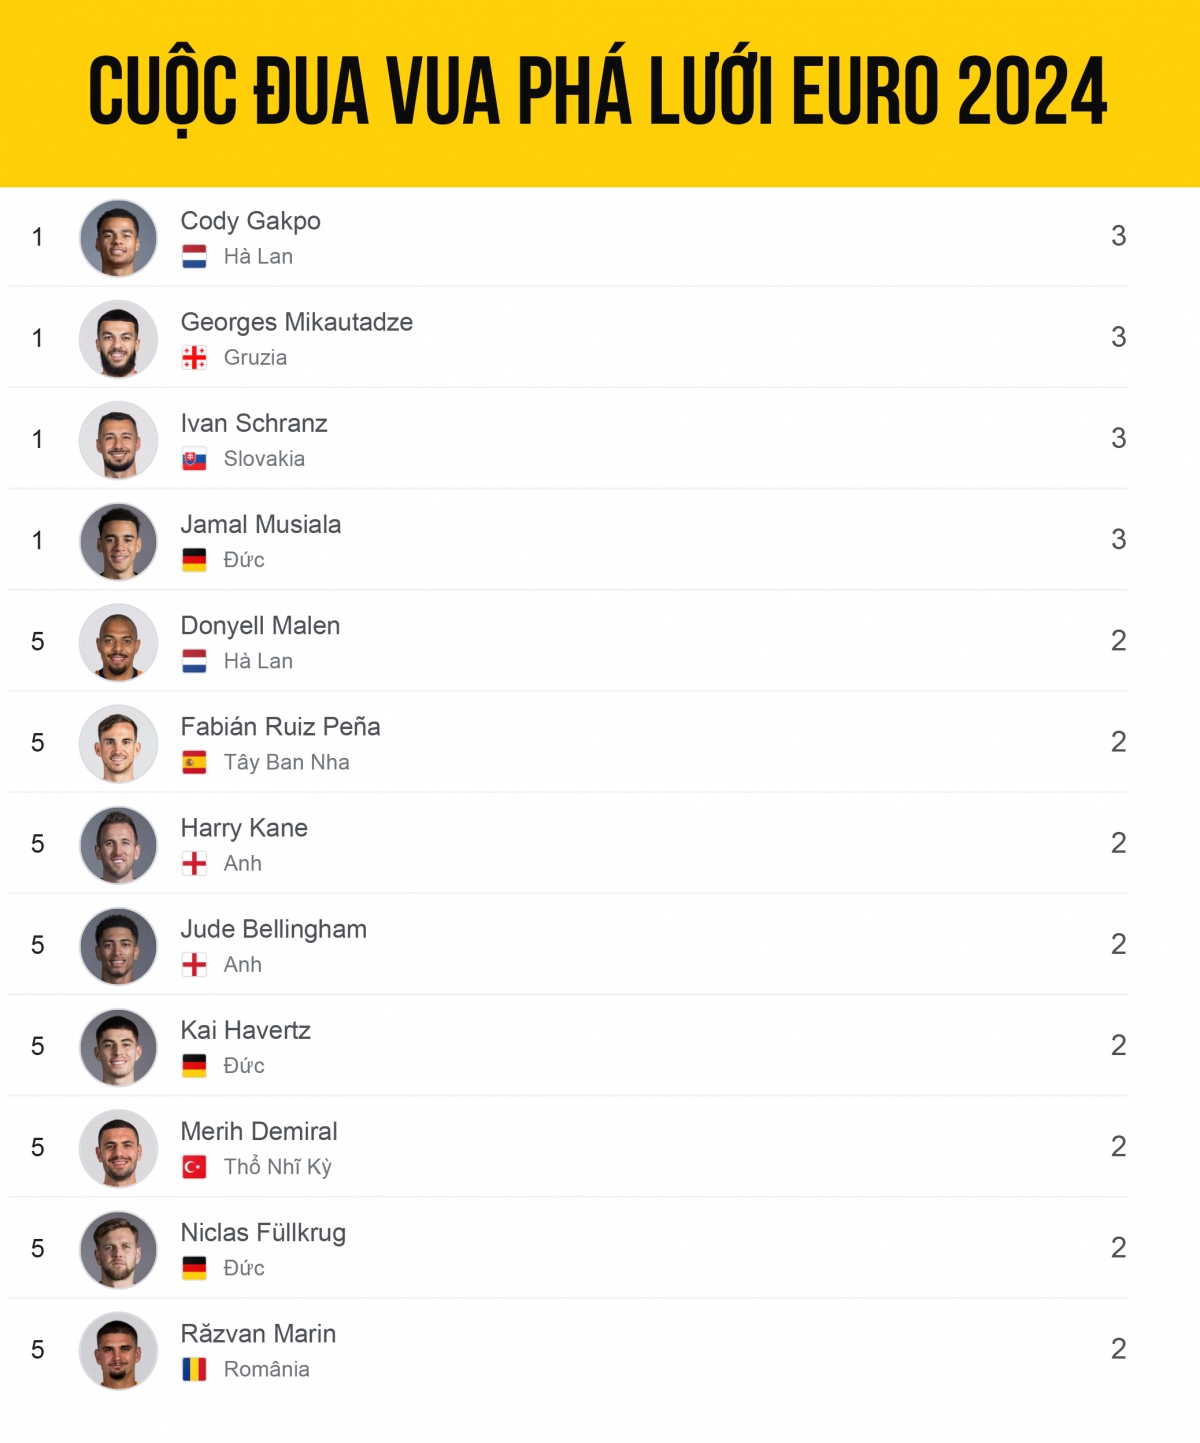 Bảng xếp hạng “Vua phá lưới” EURO 2024 mới nhất